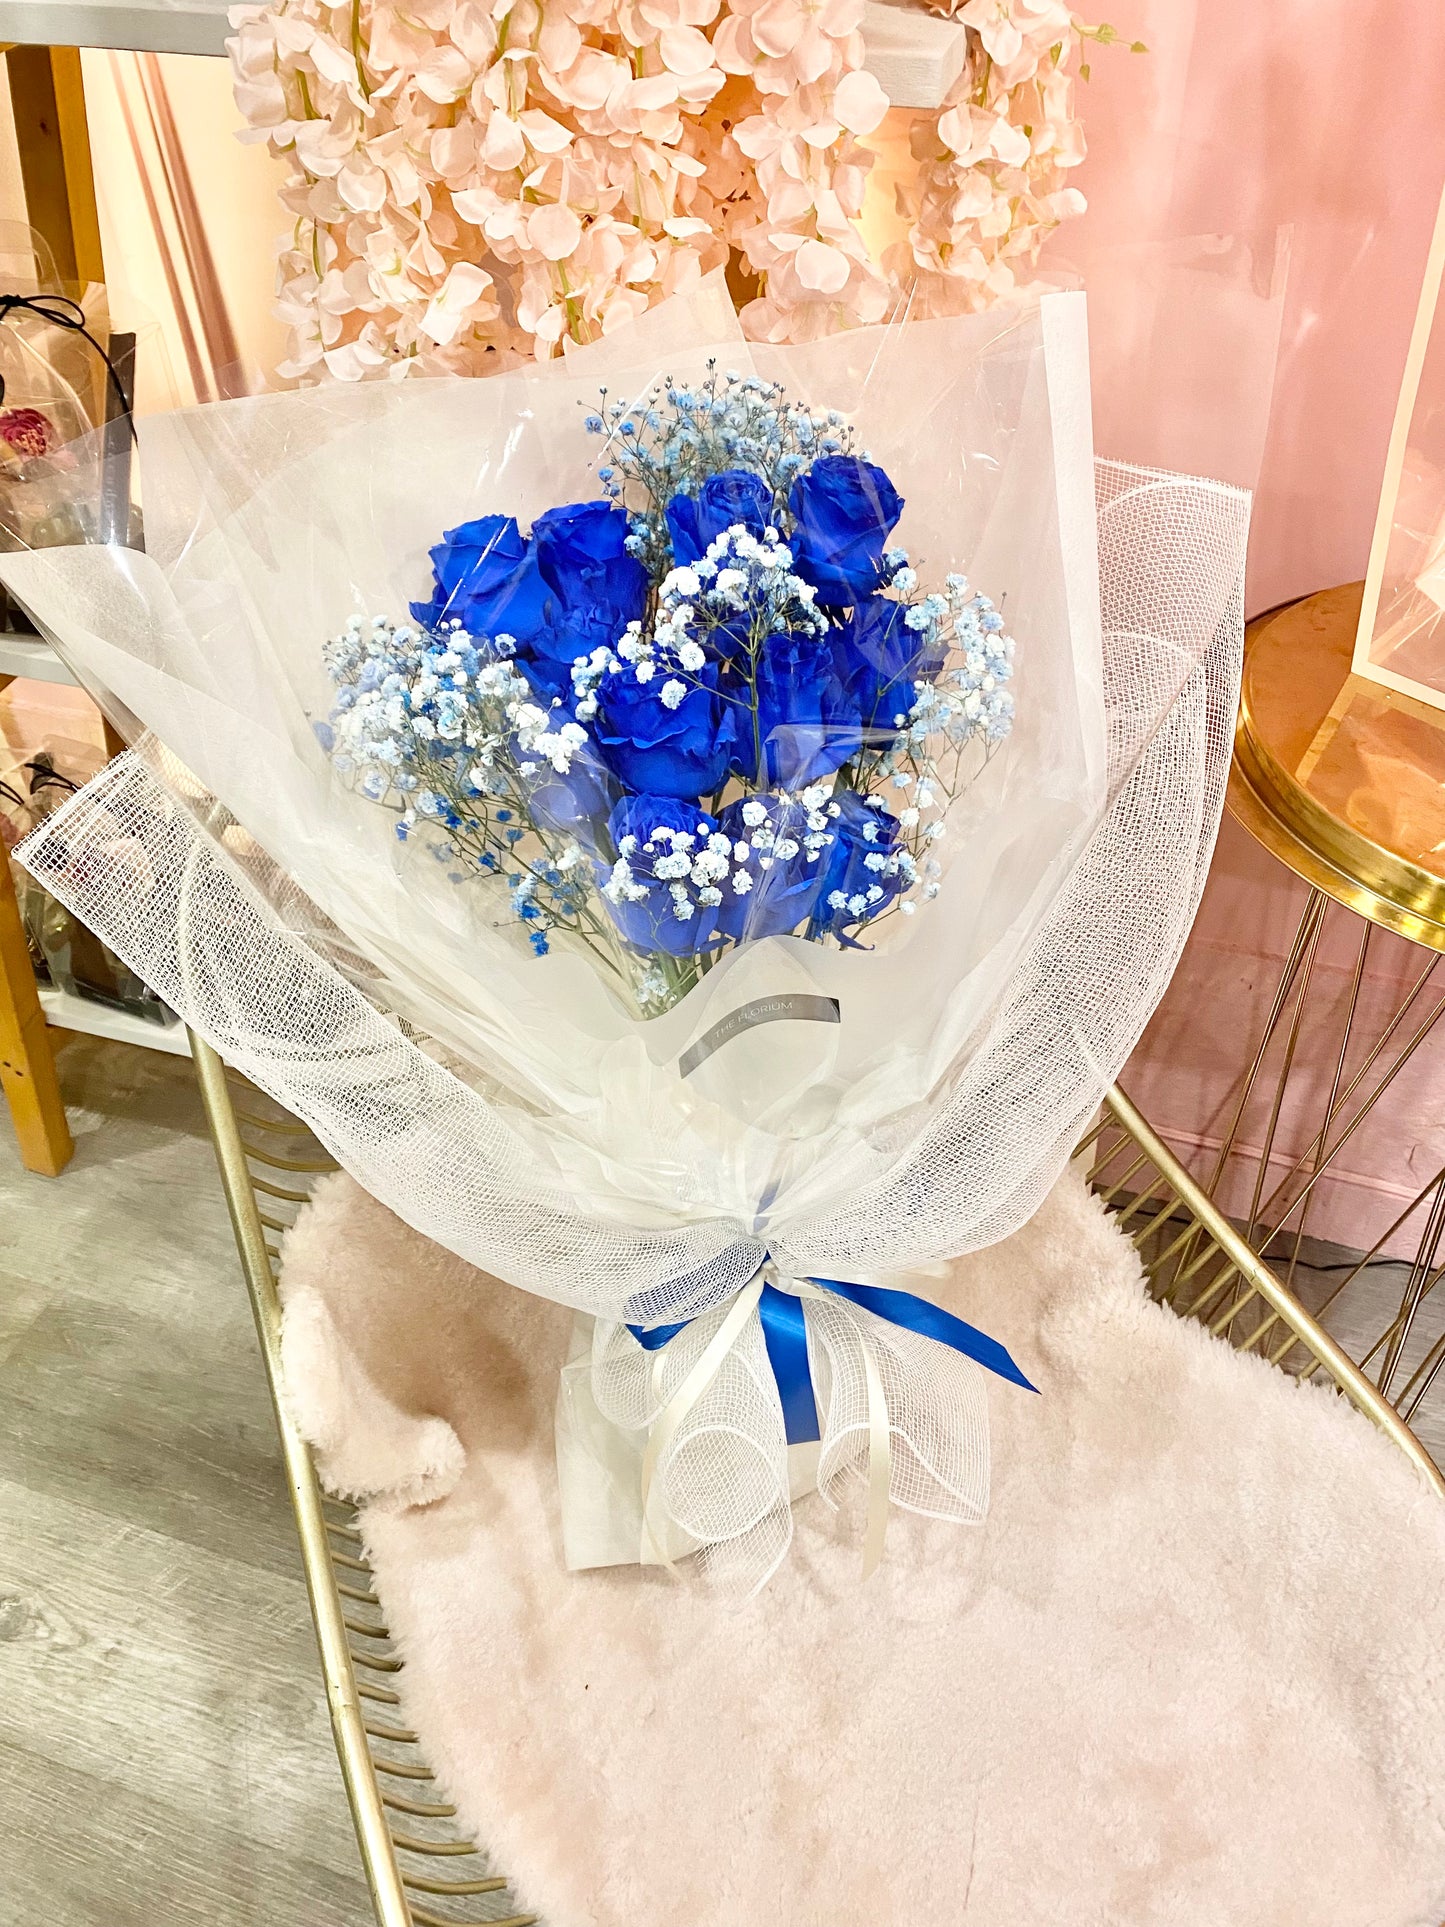 V-Day Premium Blue Roses 💙